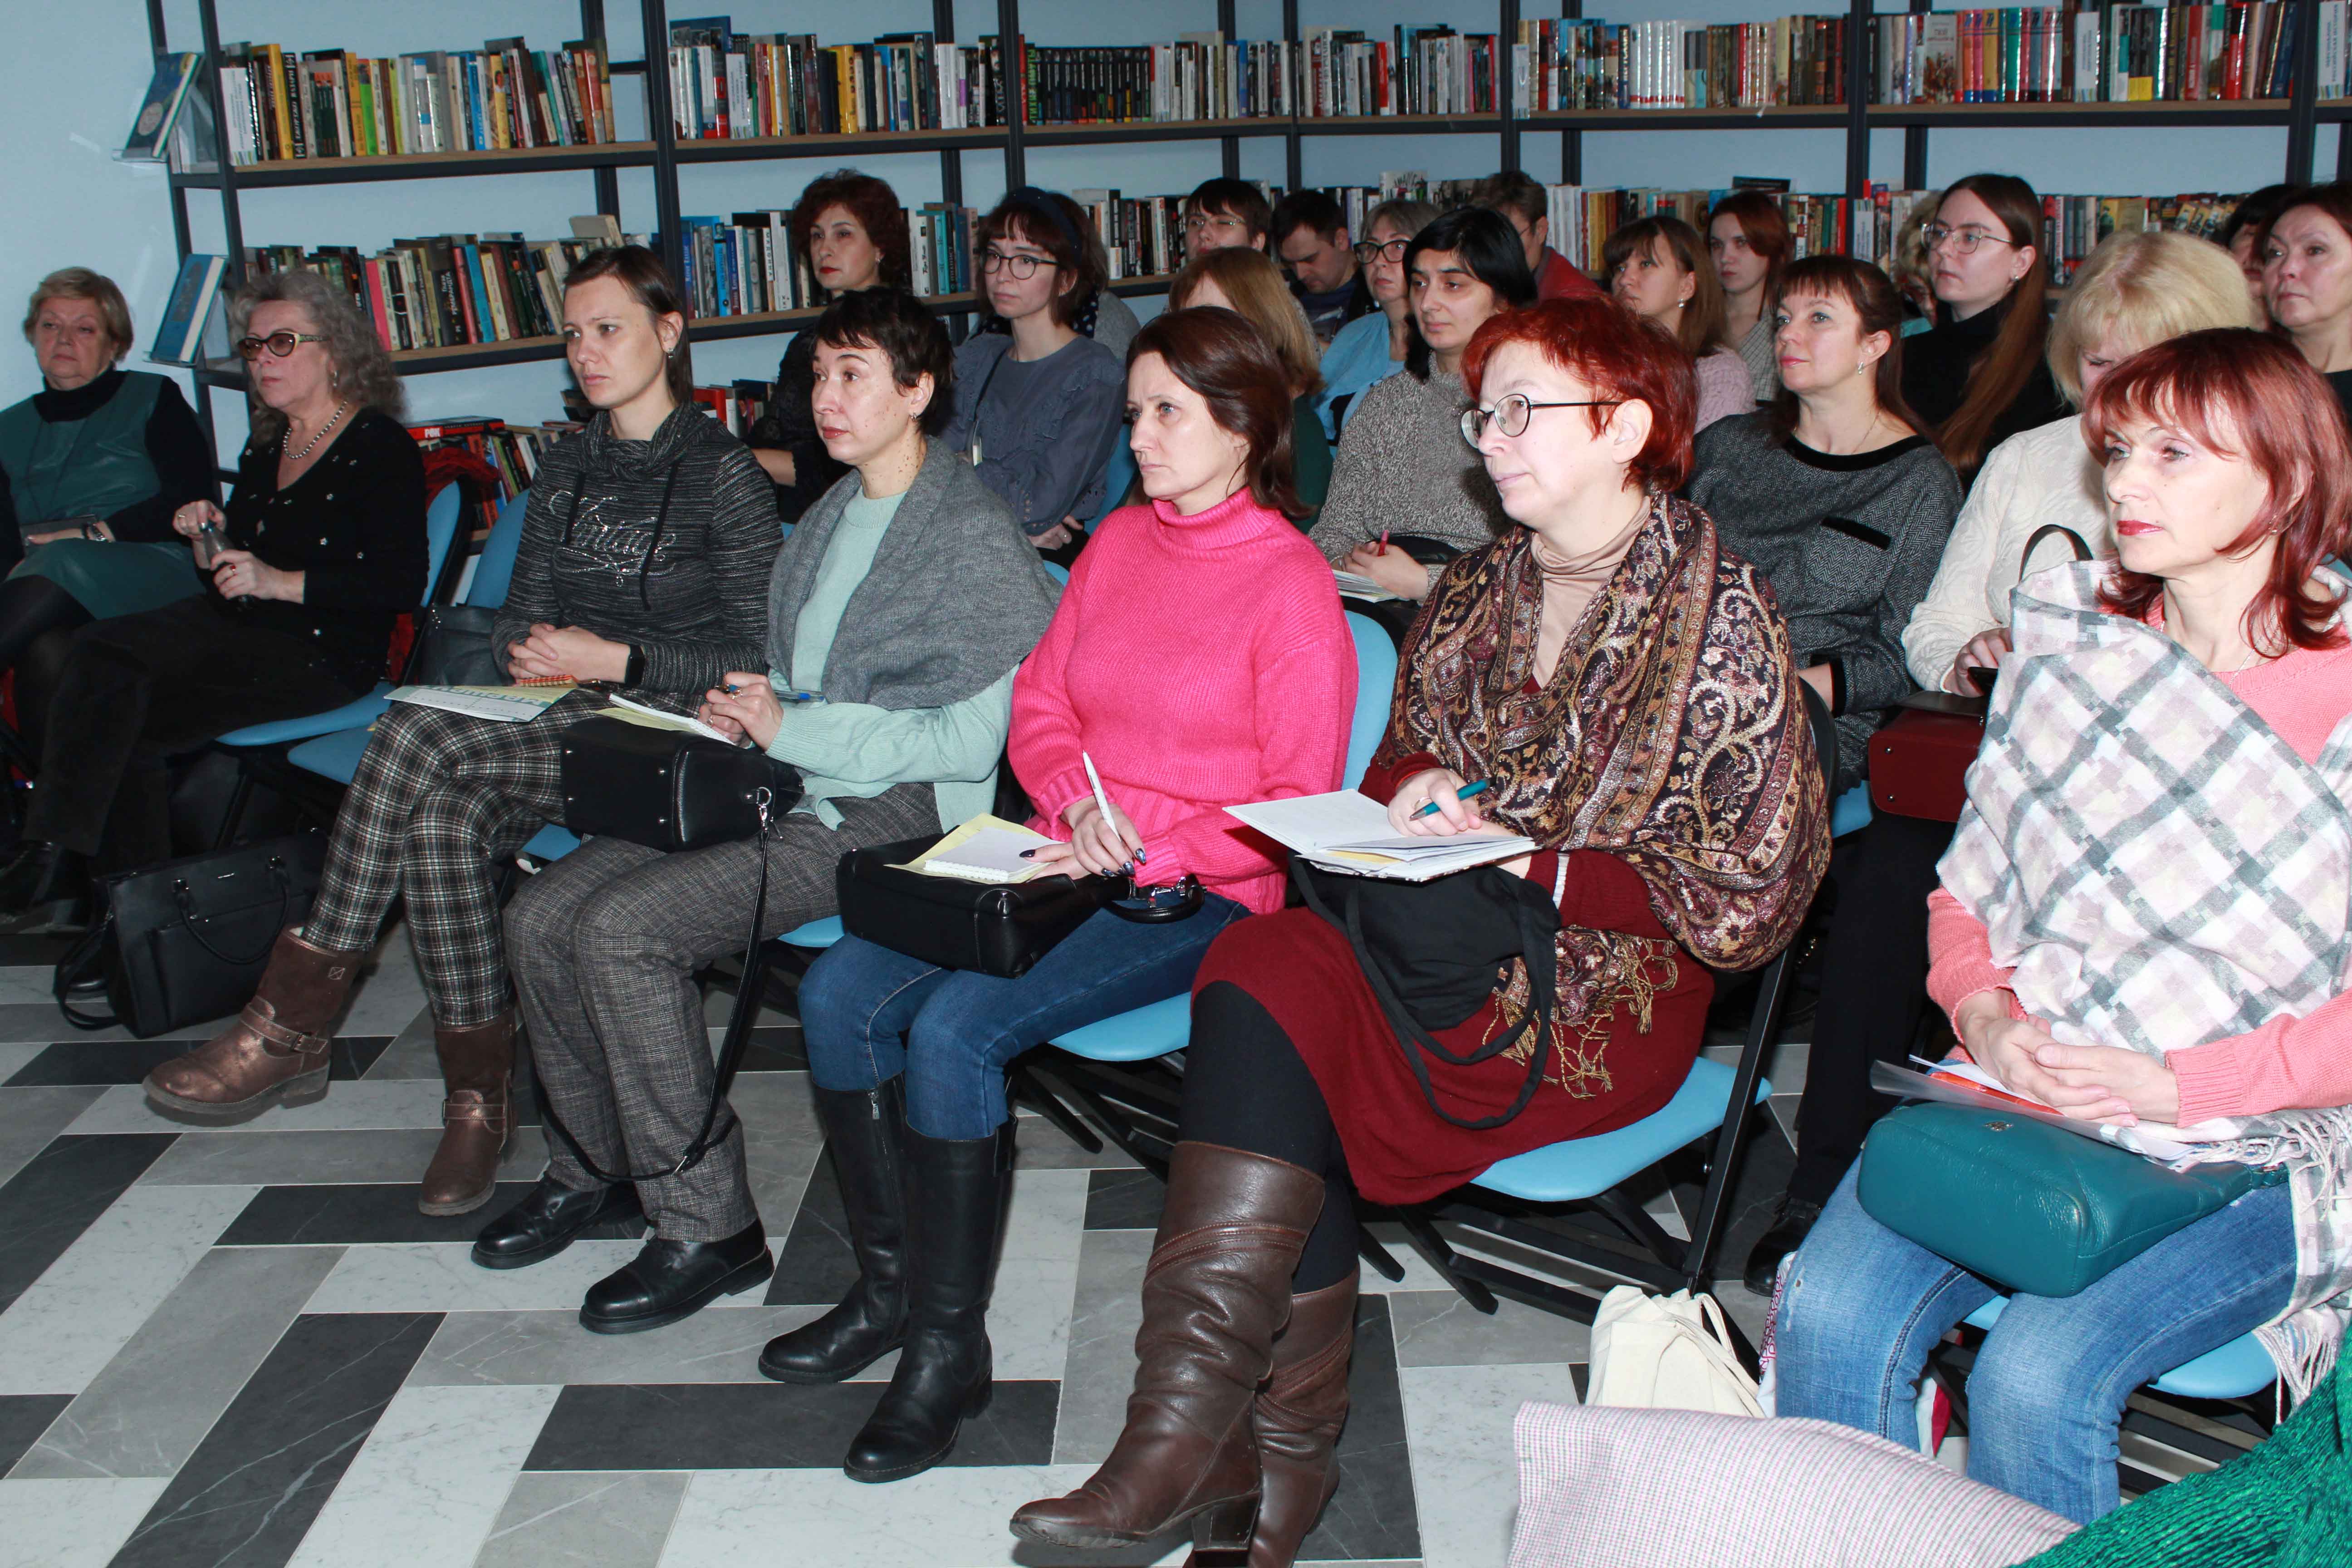 6 ноября в Библиотеке на Карповке (наб.р.Карповки, д.28) прошел выездной городской семинар для библиографов общедоступных библиотек, организованный ЦГПБ им. В. Маяковского​​​​​